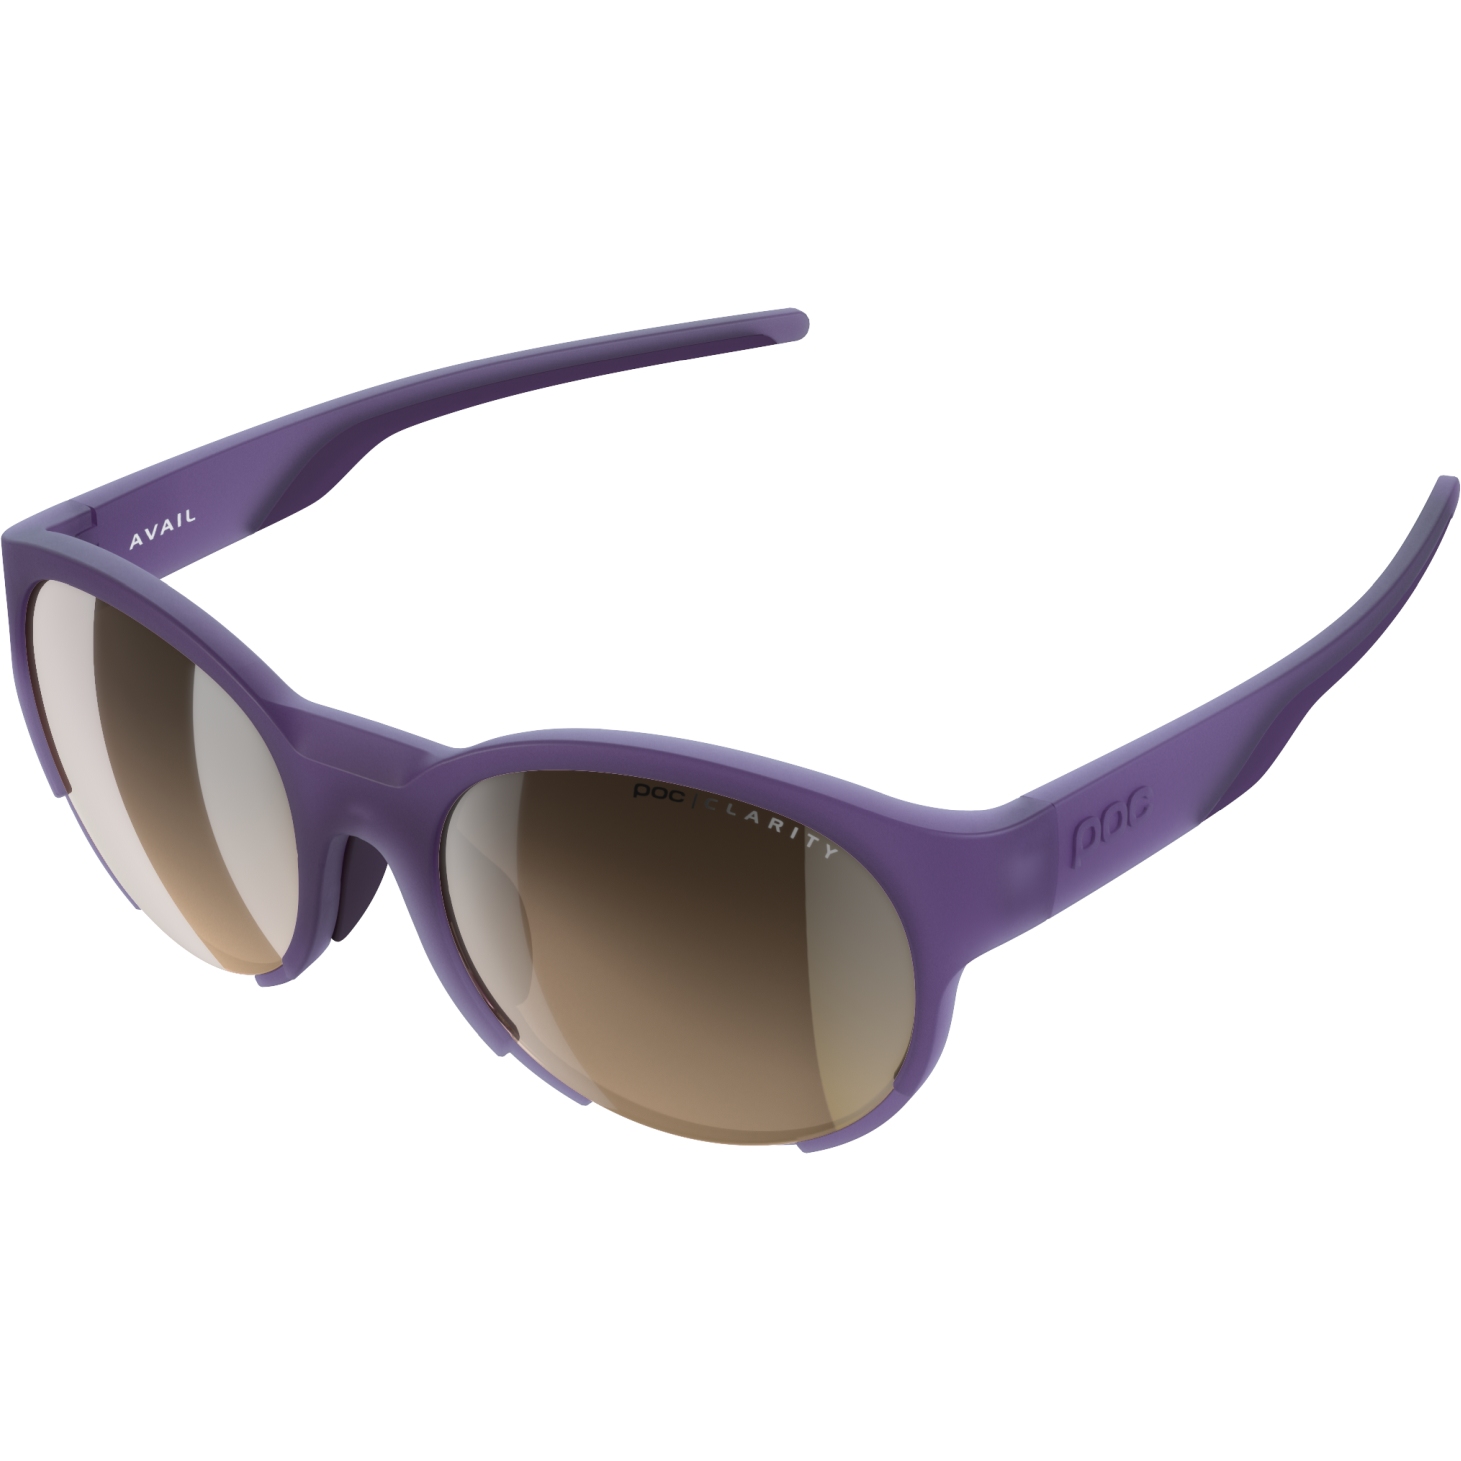 Produktbild von POC Avail Brille - Sapphire Purple Translucent / Brown/Silver Mirror